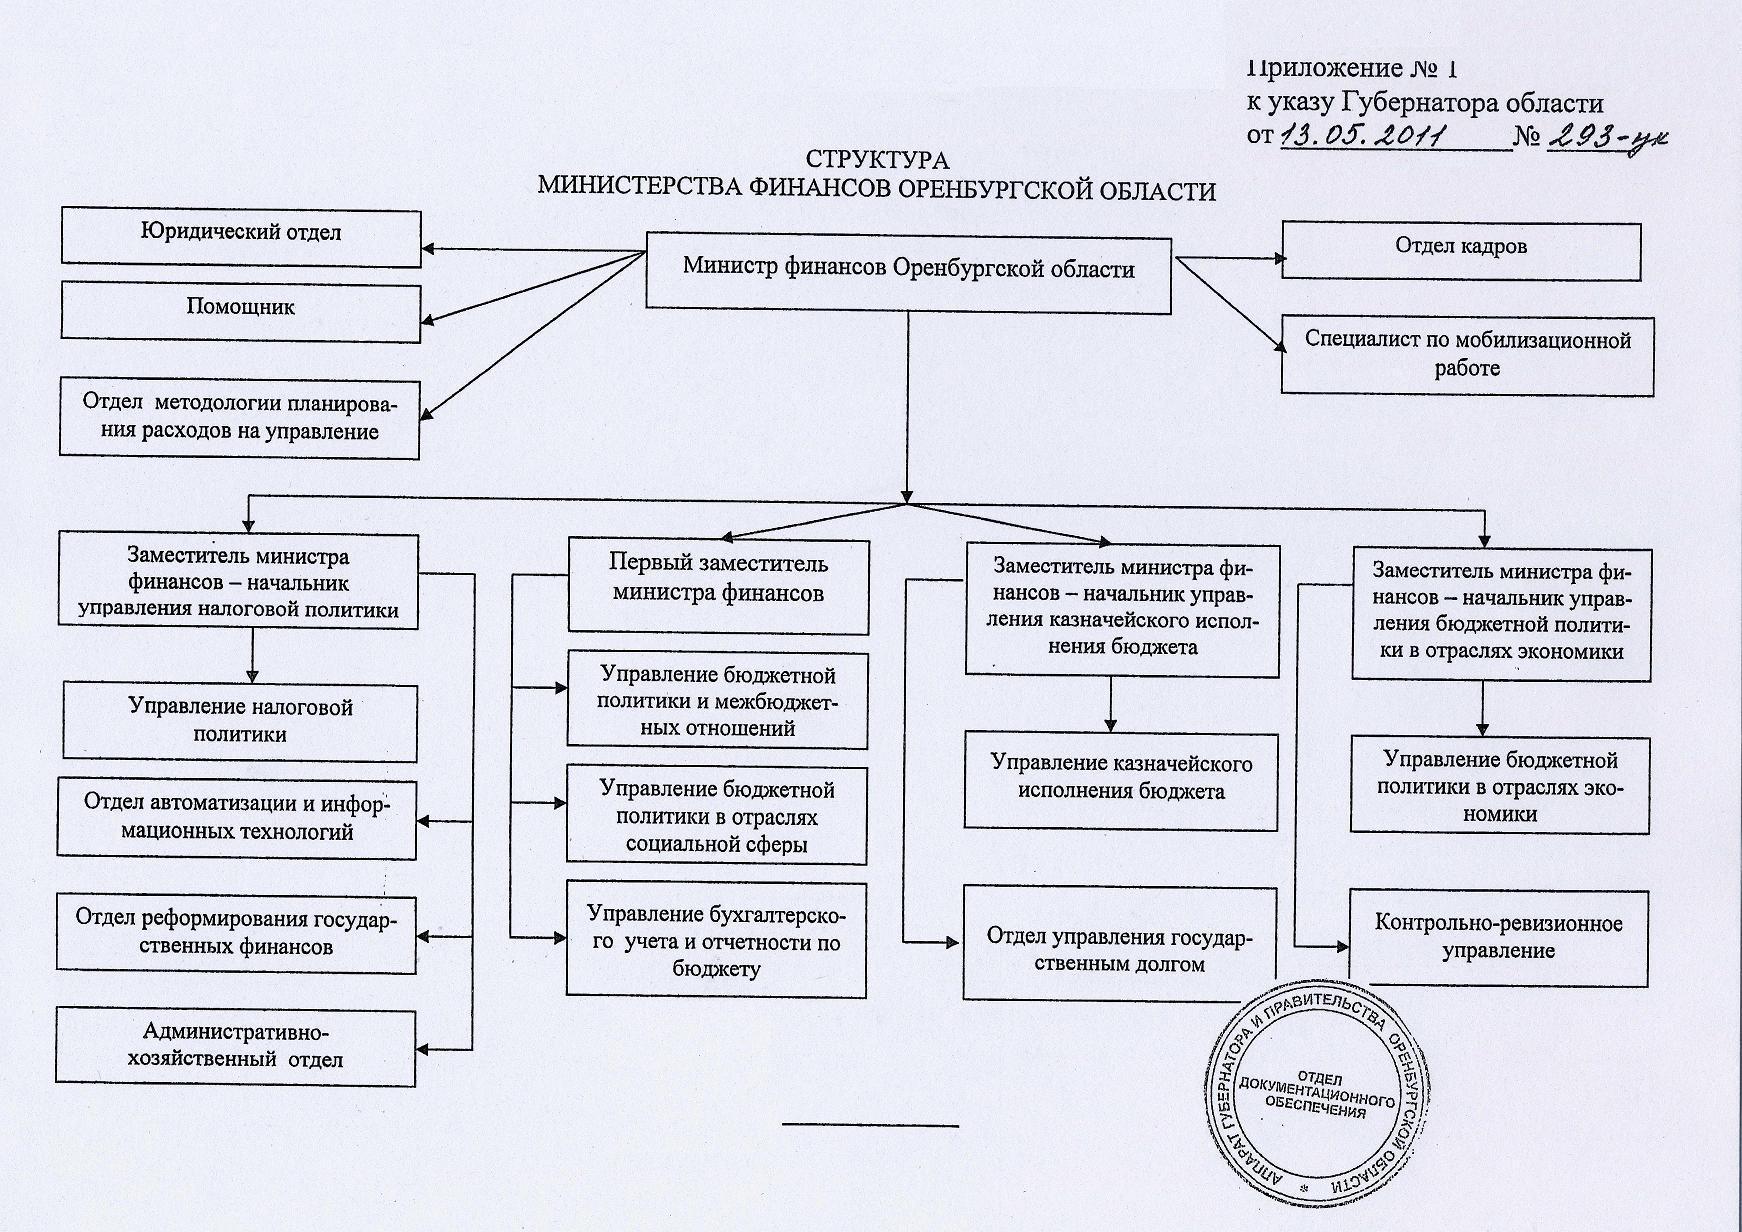 Сайт министерства финансов оренбургской